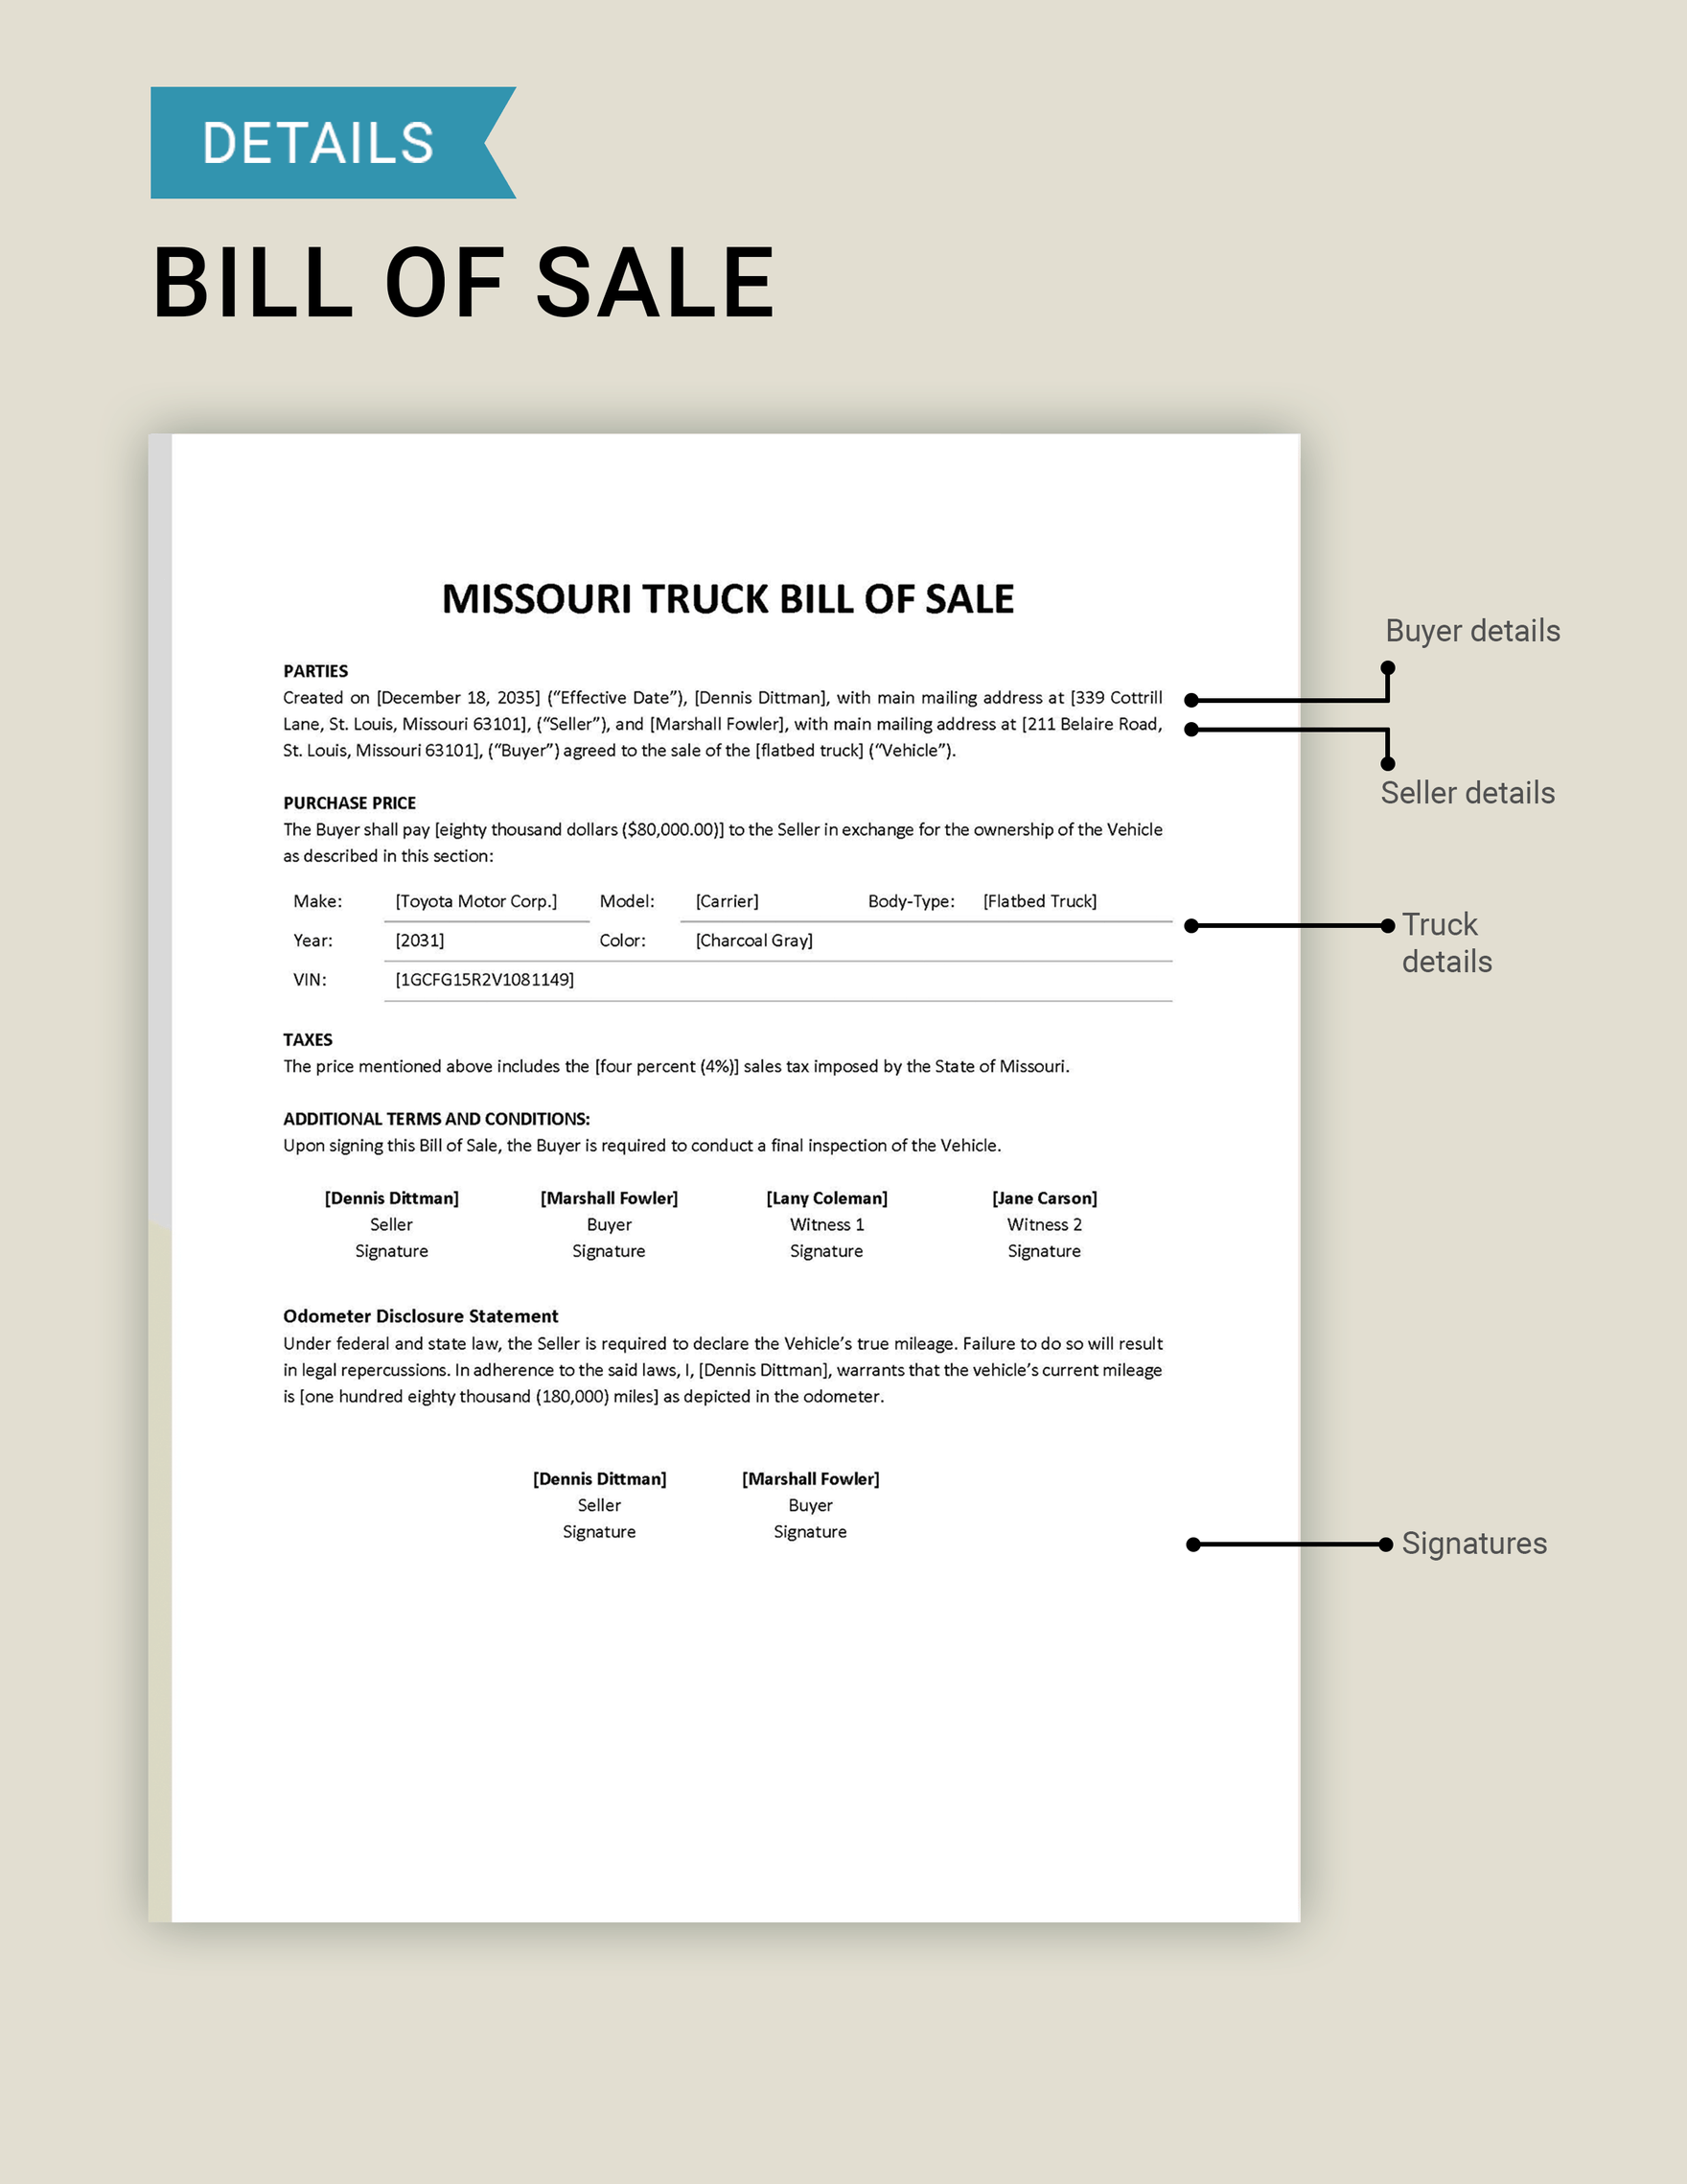 Missouri Truck Bill of Sale Template